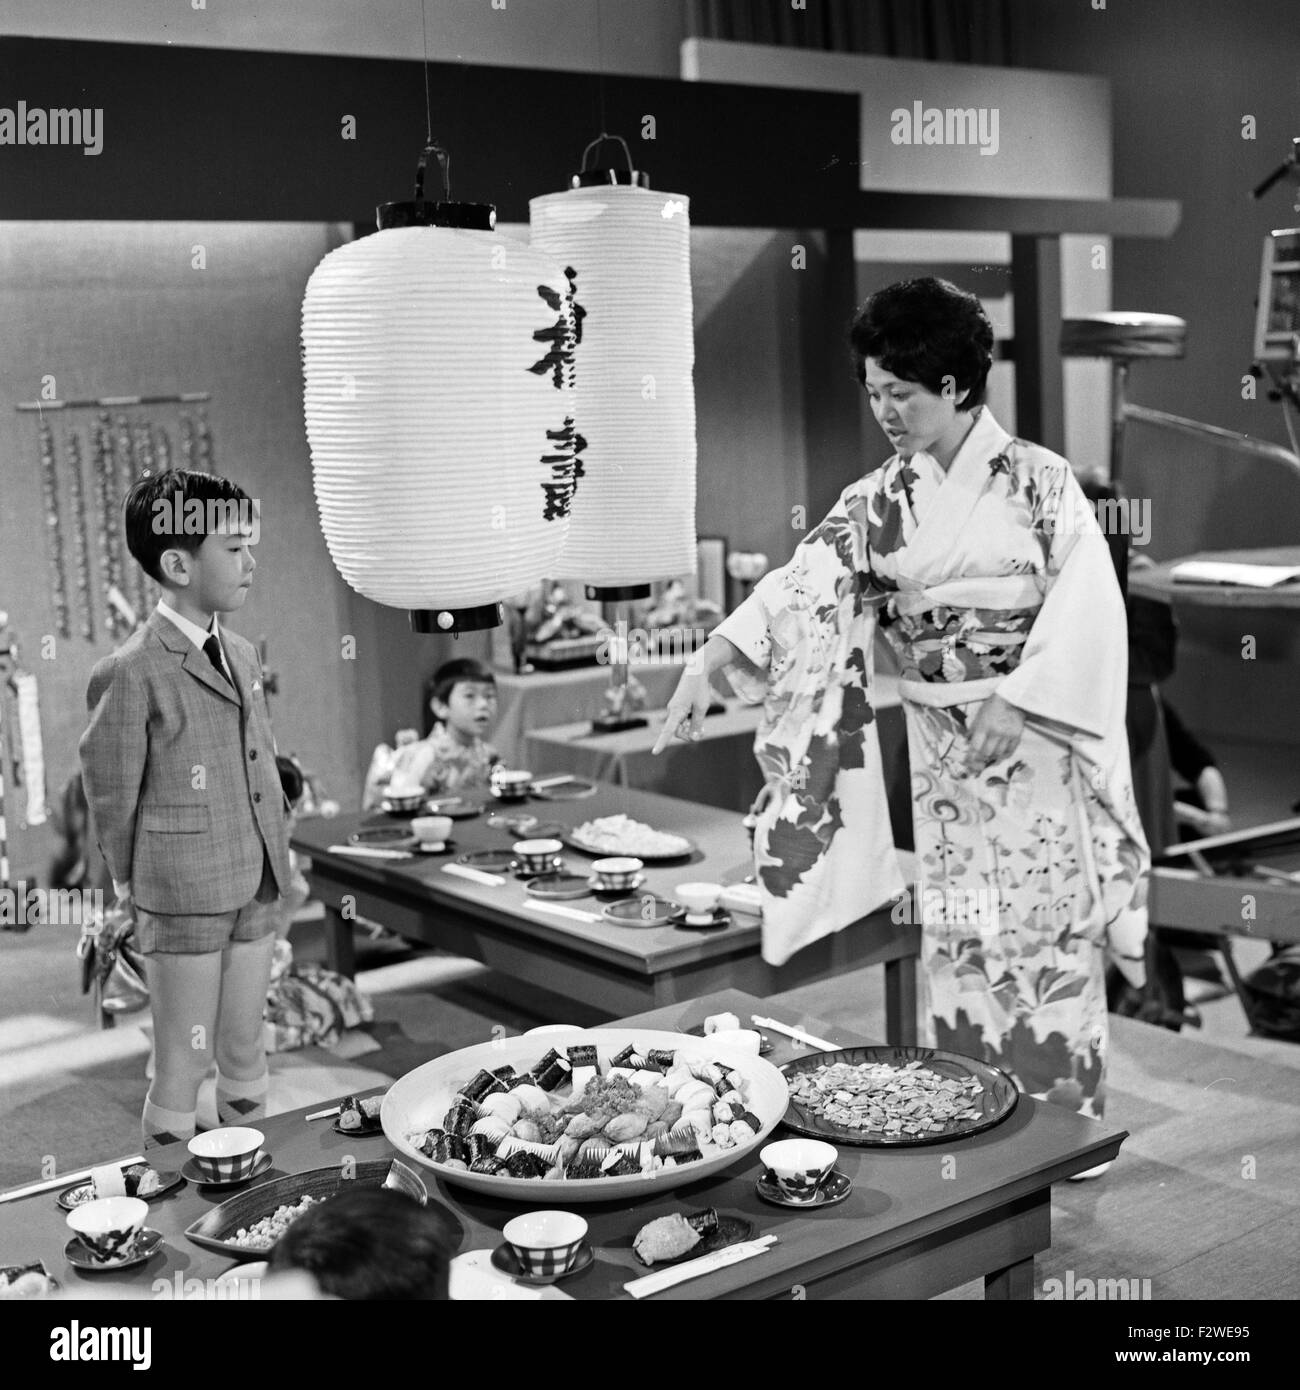 Epdisode "... Bei Den Japanern" aus der ZDF-Fernsehserie "Hallo Freunde", Deutschland 1968, Szenenfoto Stockfoto